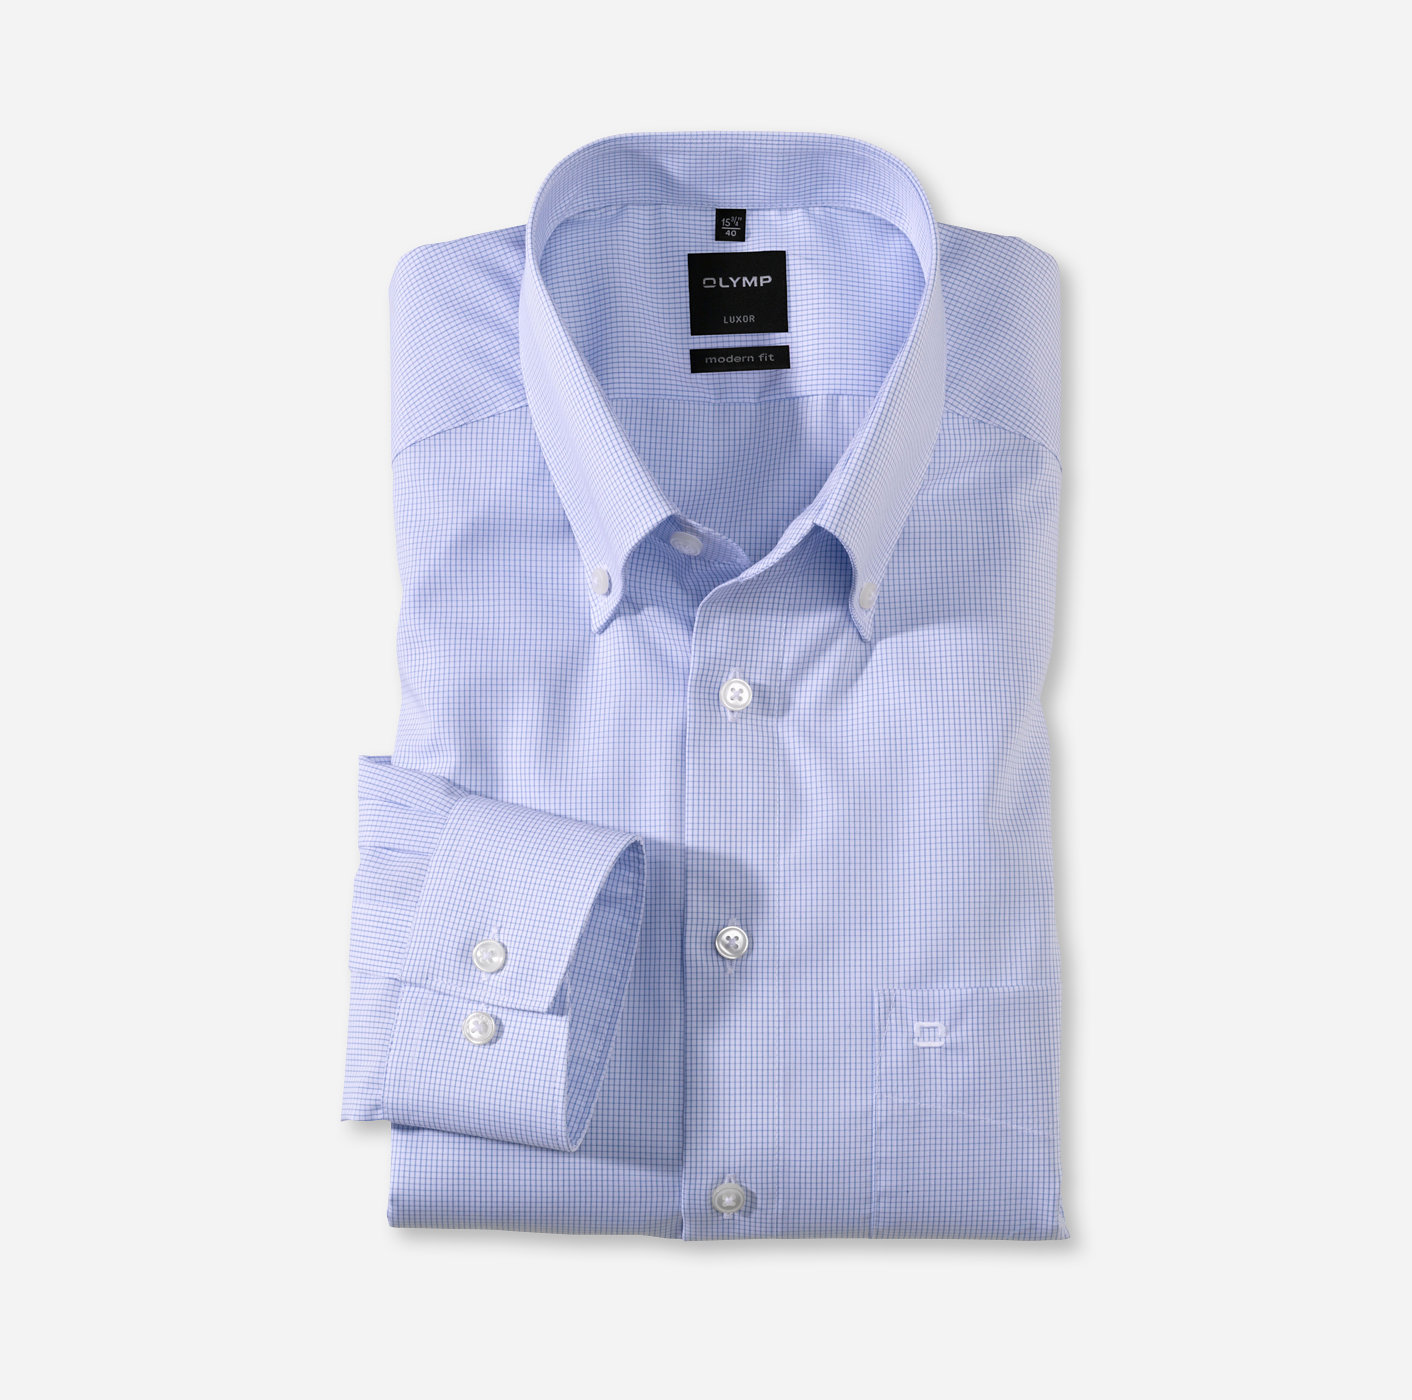 OLYMP Luxor, modern fit, Business shirt, Pointes boutonnées, Bleu